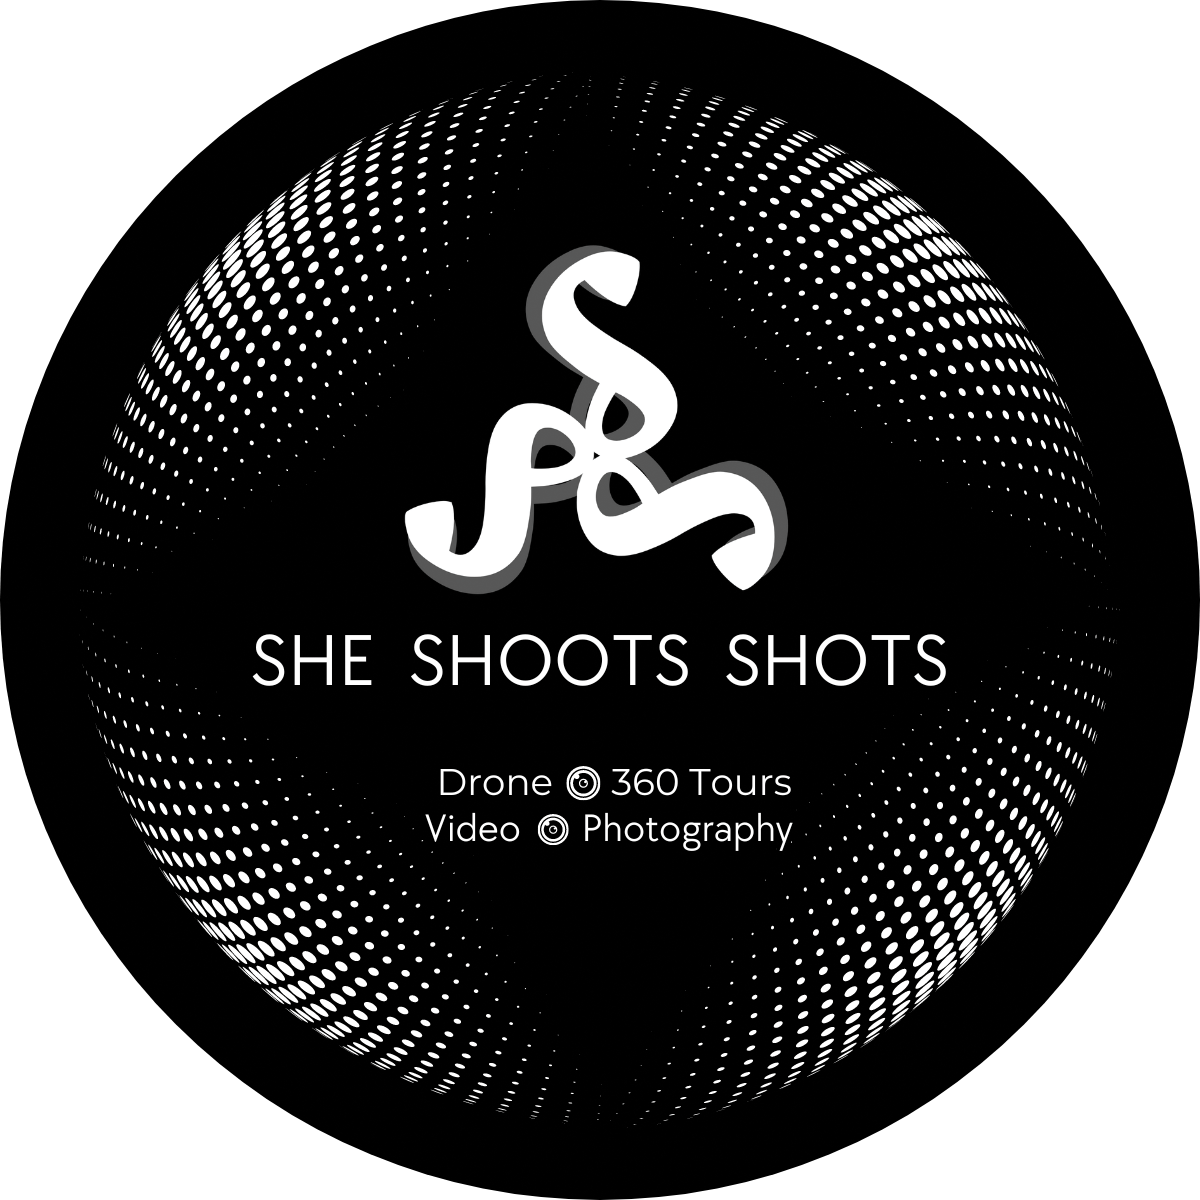 She Shoots Shots